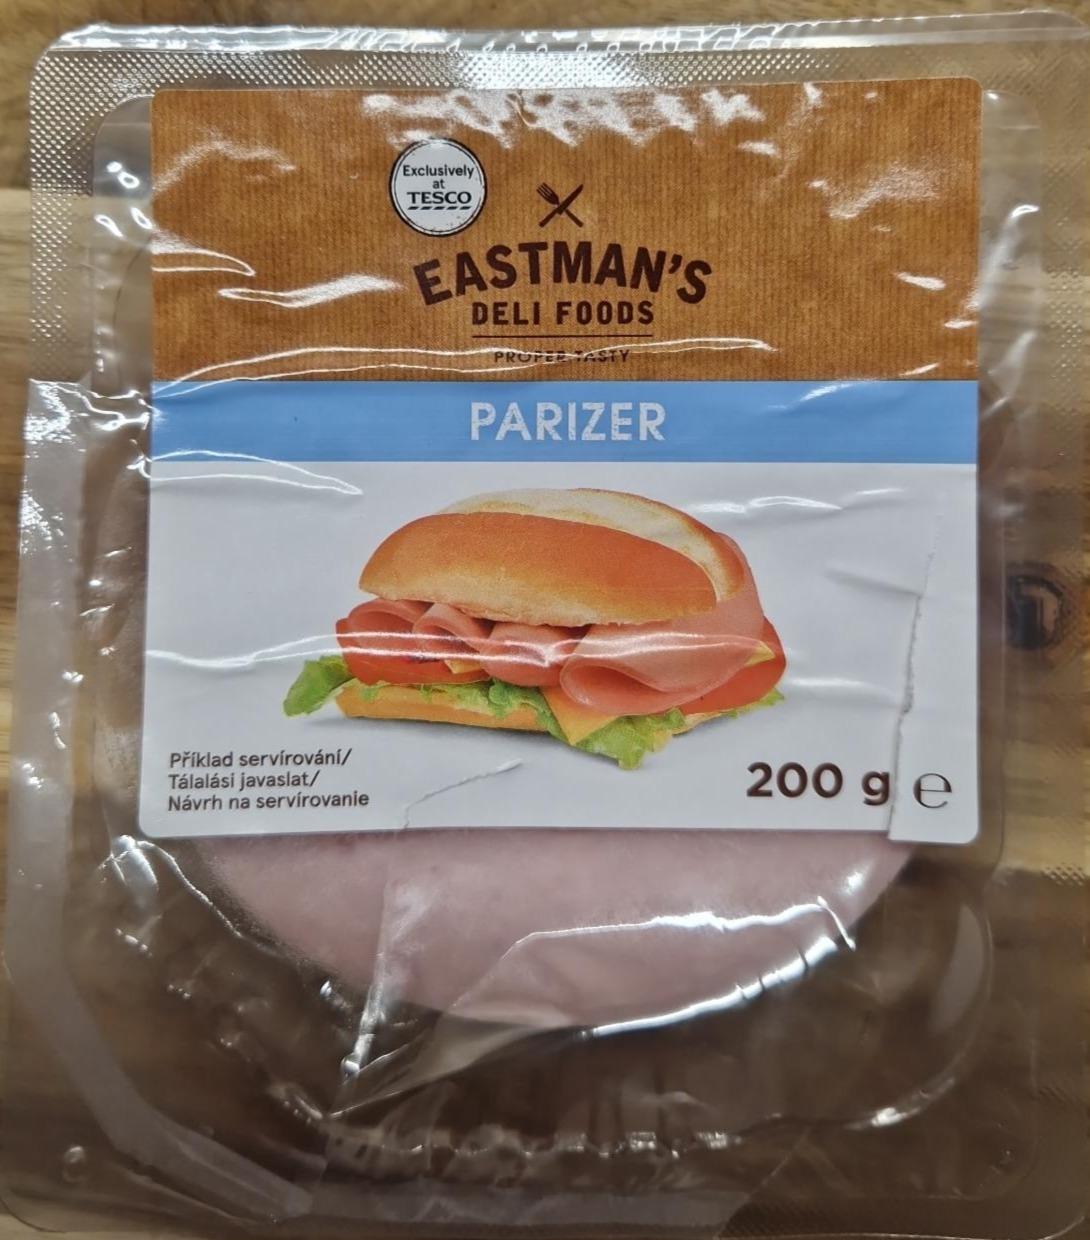 Képek - Parizer Eastman's Deli Foods